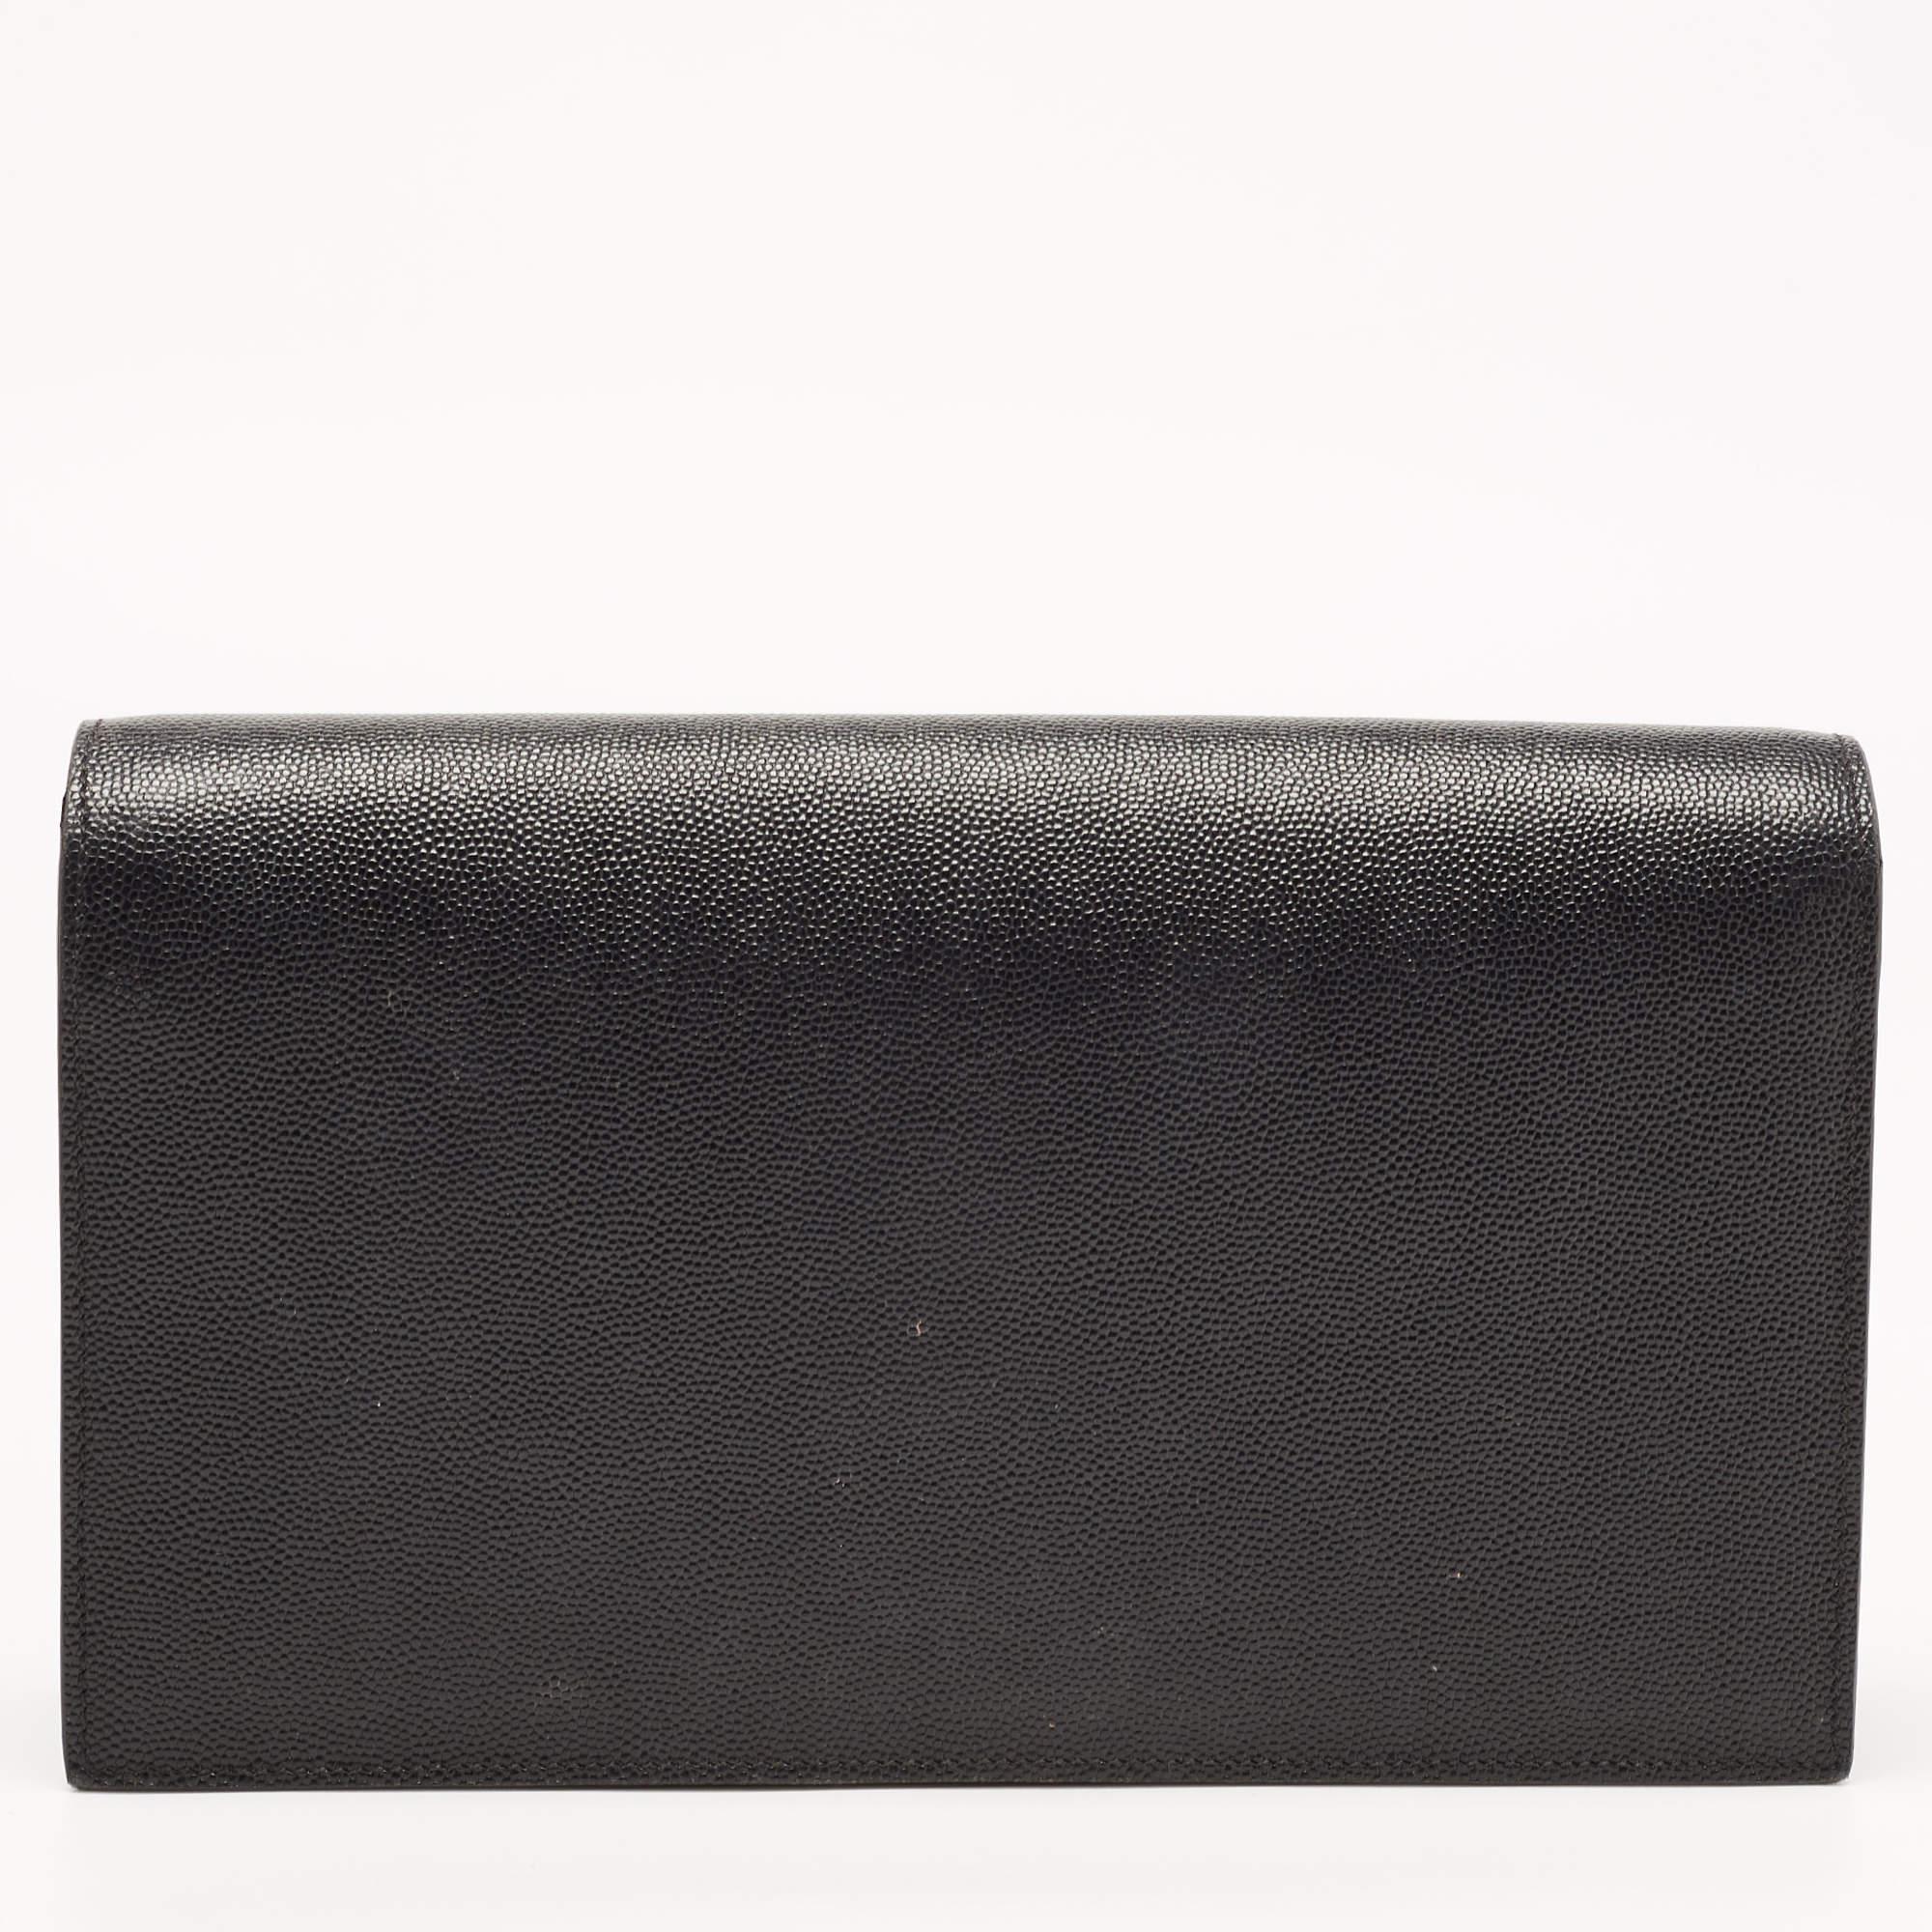 Saint Laurent Black Leather Kate Clutch For Sale 15